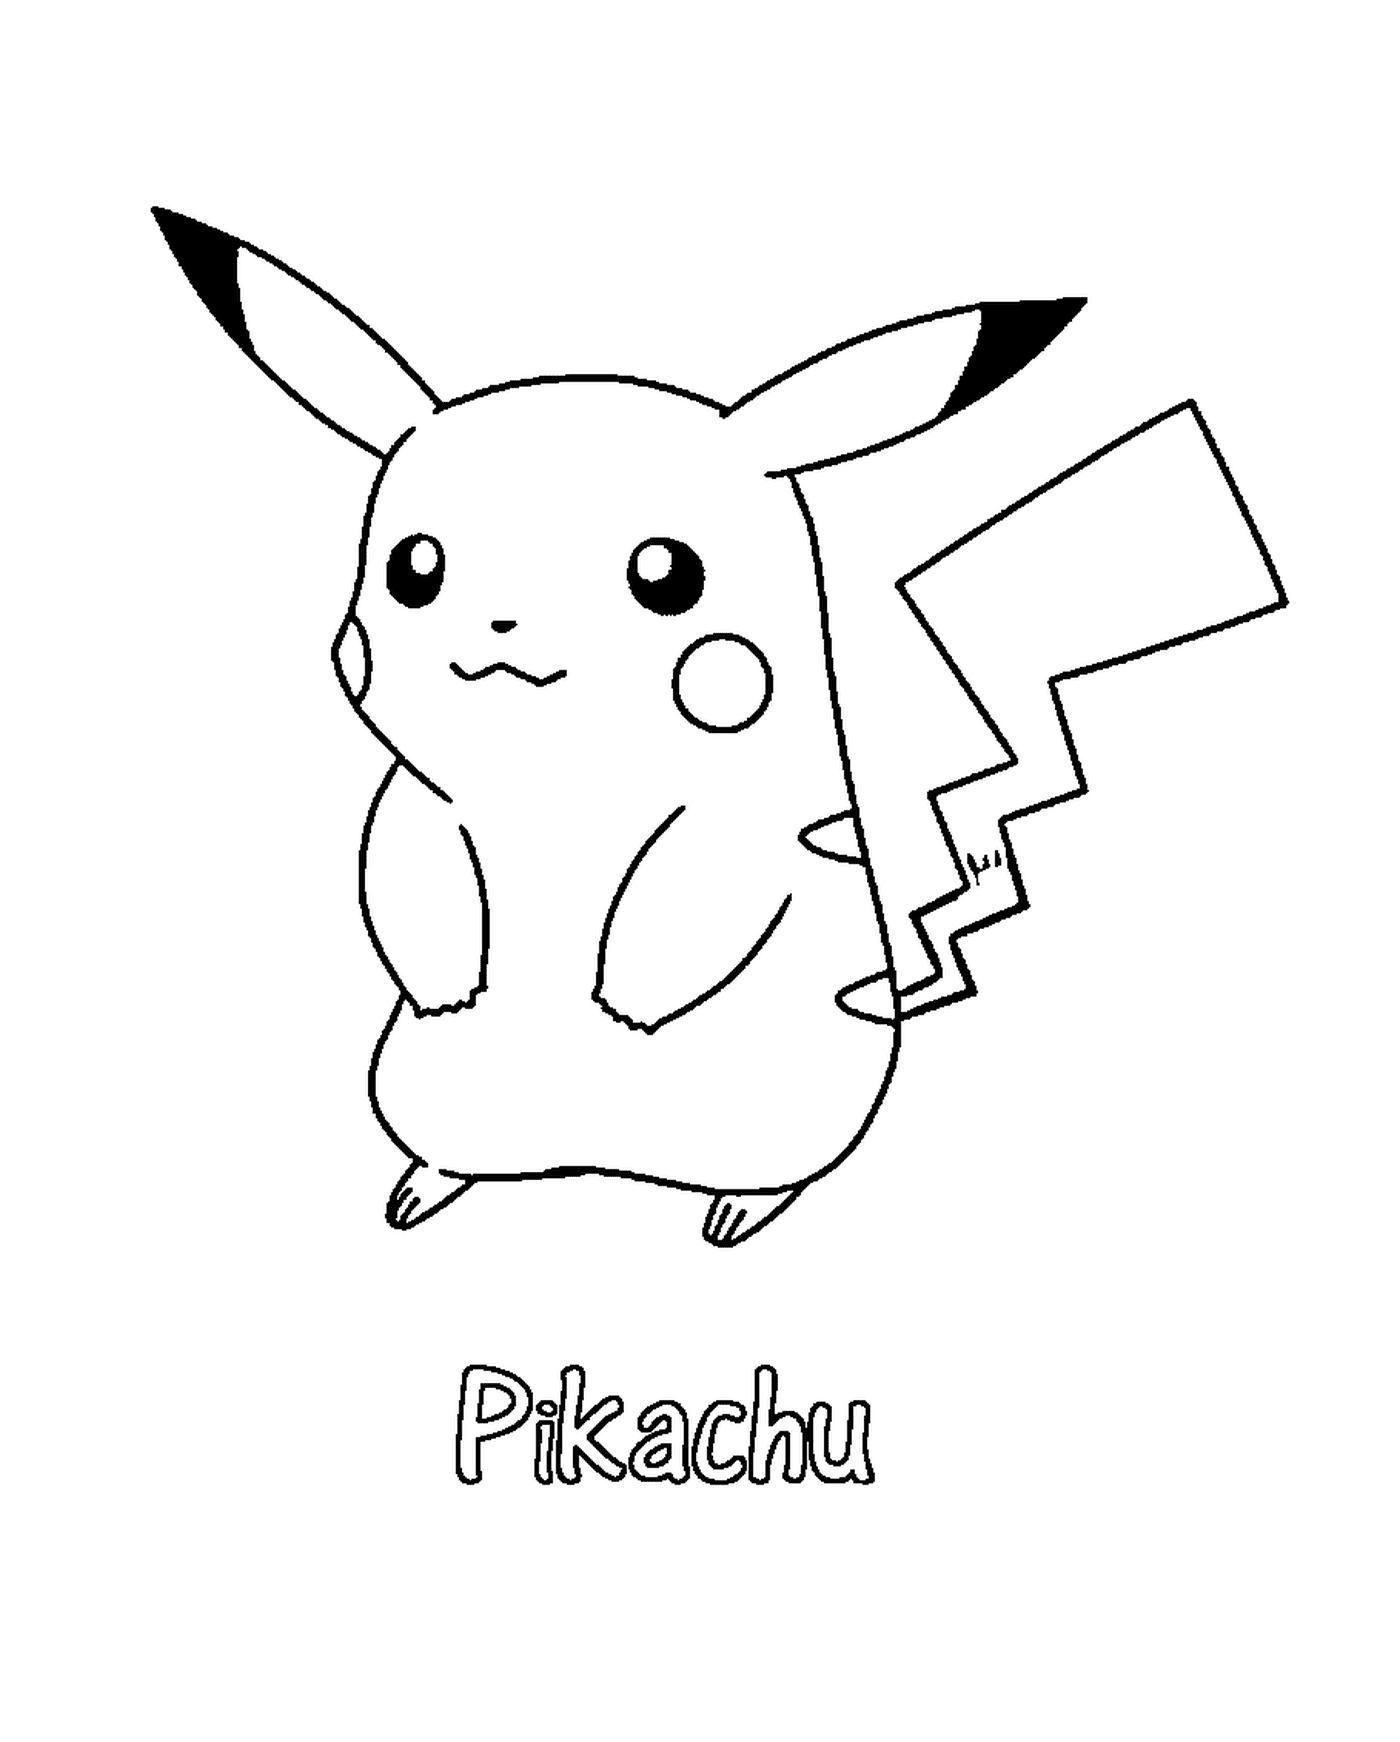  Pikachu con una expresión alegre 